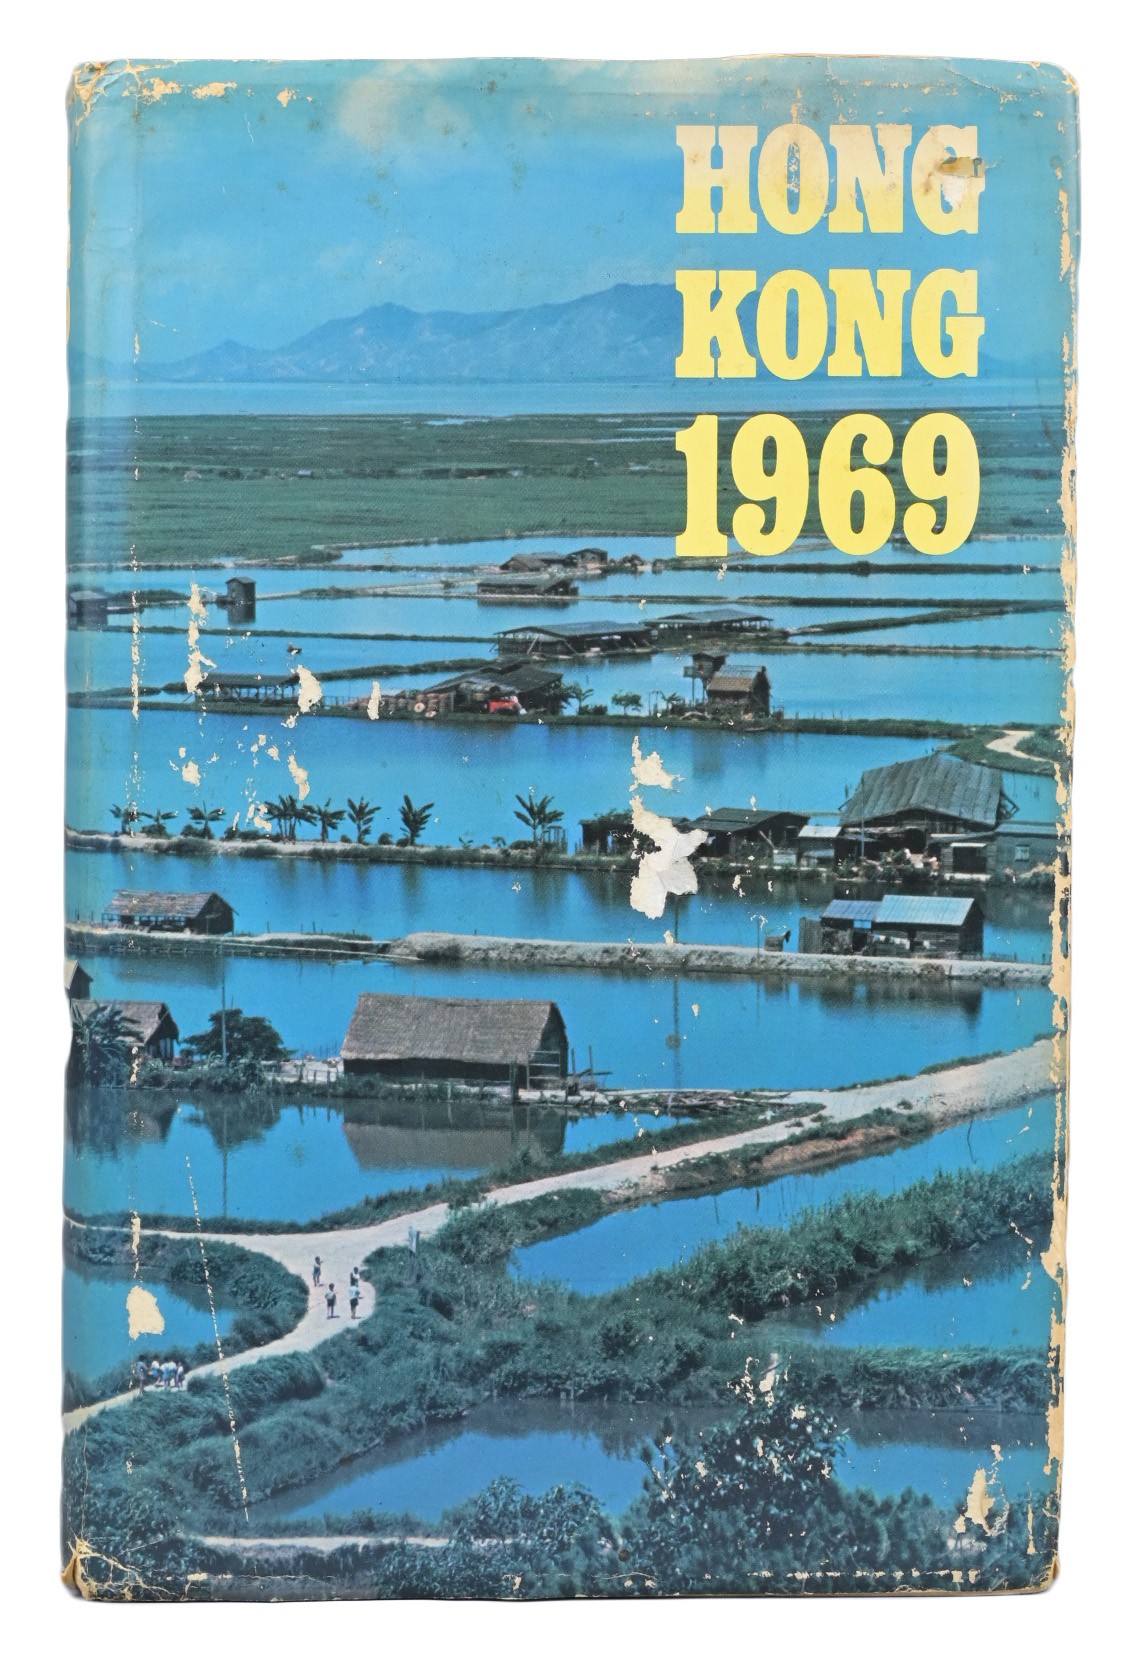 BOOK, HONG KONG REPORT FOR THE YEAR 1969. Hong Kong: Hong Kong Government Press, 1970. First